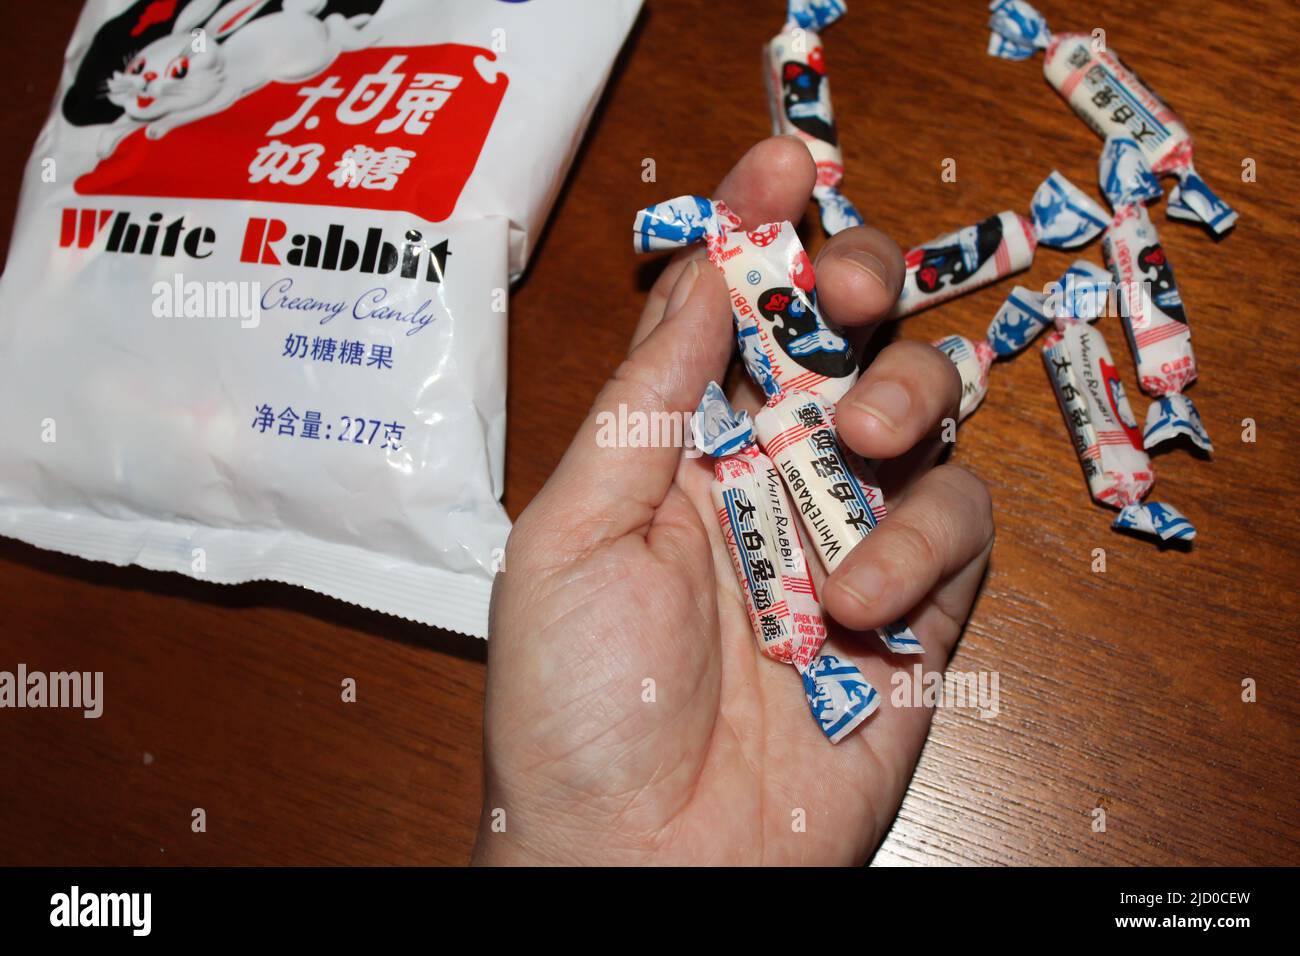 Persona que sostiene varios caramelos de la Candy Cremosa de Conejo Blanco. Esta es una marca de caramelos de leche fabricados por Shanghai Guan Sheng Yuan Food, Ltd., IN Foto de stock